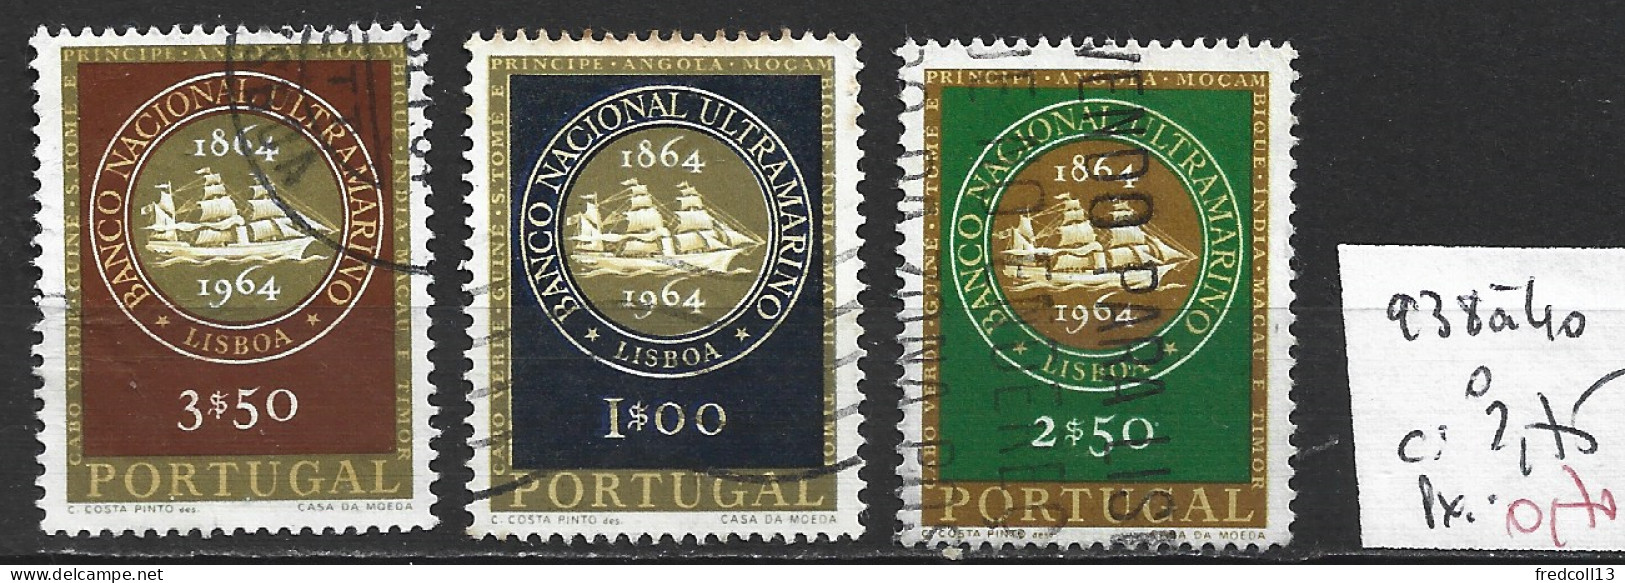 PORTUGAL 938 à 40 Oblitérés Côte 2.75 € - Used Stamps